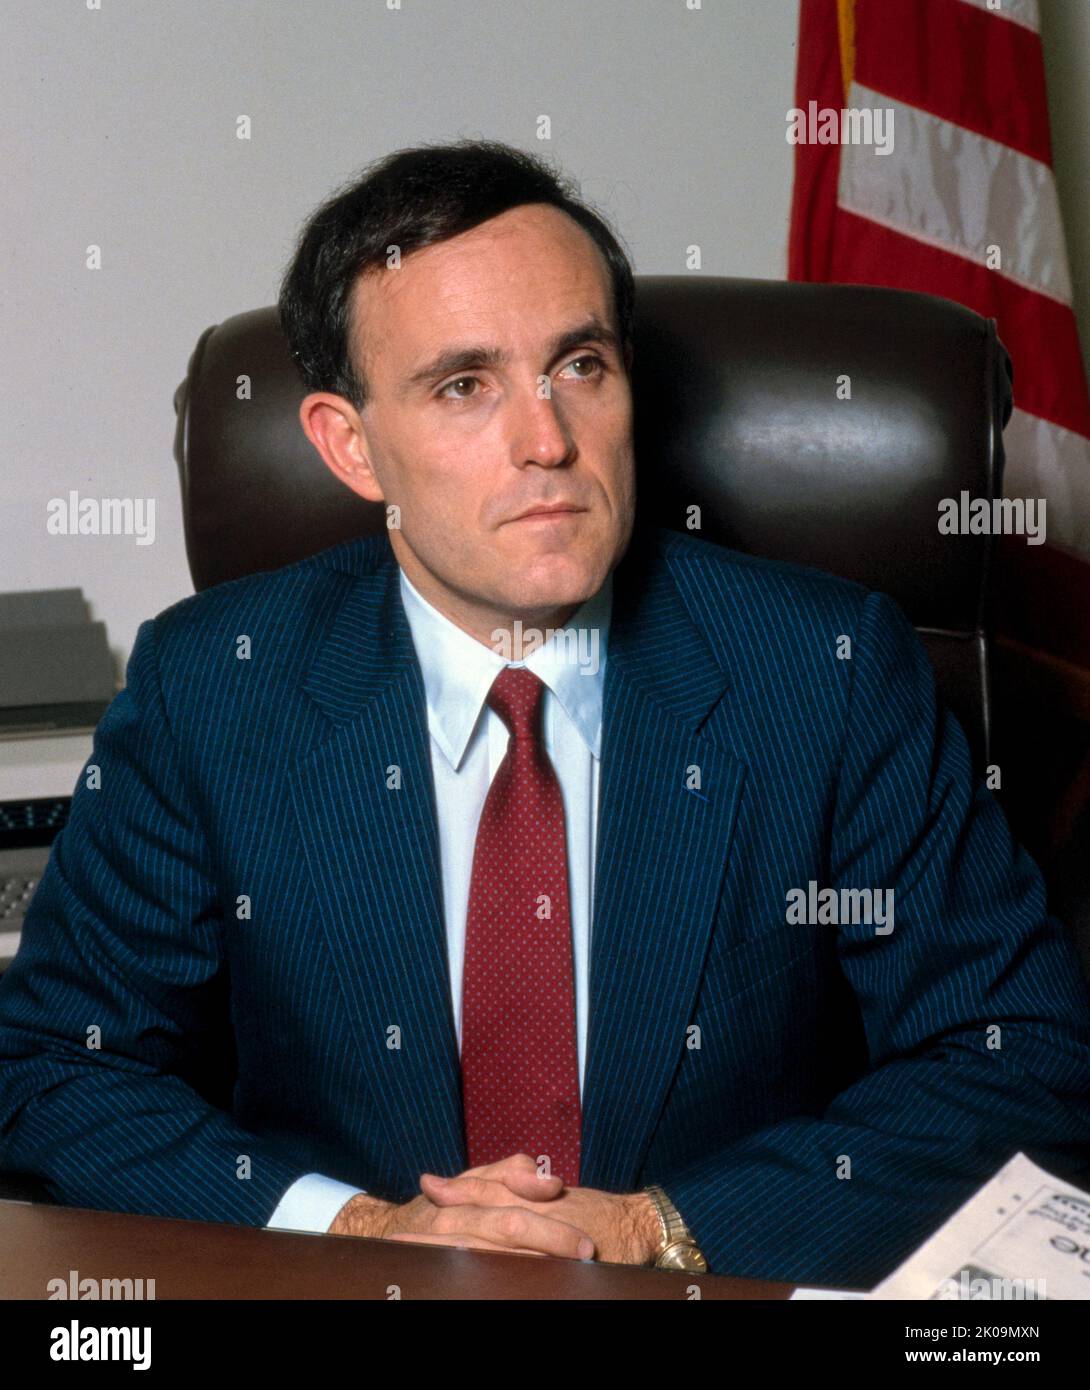 Rudolph Giuliani (geb. 1944) amerikanischer Politiker und Rechtsanwalt, der von 1994 bis 2001 als Bürgermeister von New York City 107. tätig war. Zuvor war er von 1981 bis 1983 als Associate Attorney General der Vereinigten Staaten und von 1983 bis 1989 als Attorney des Southern District of New York tätig. Stockfoto